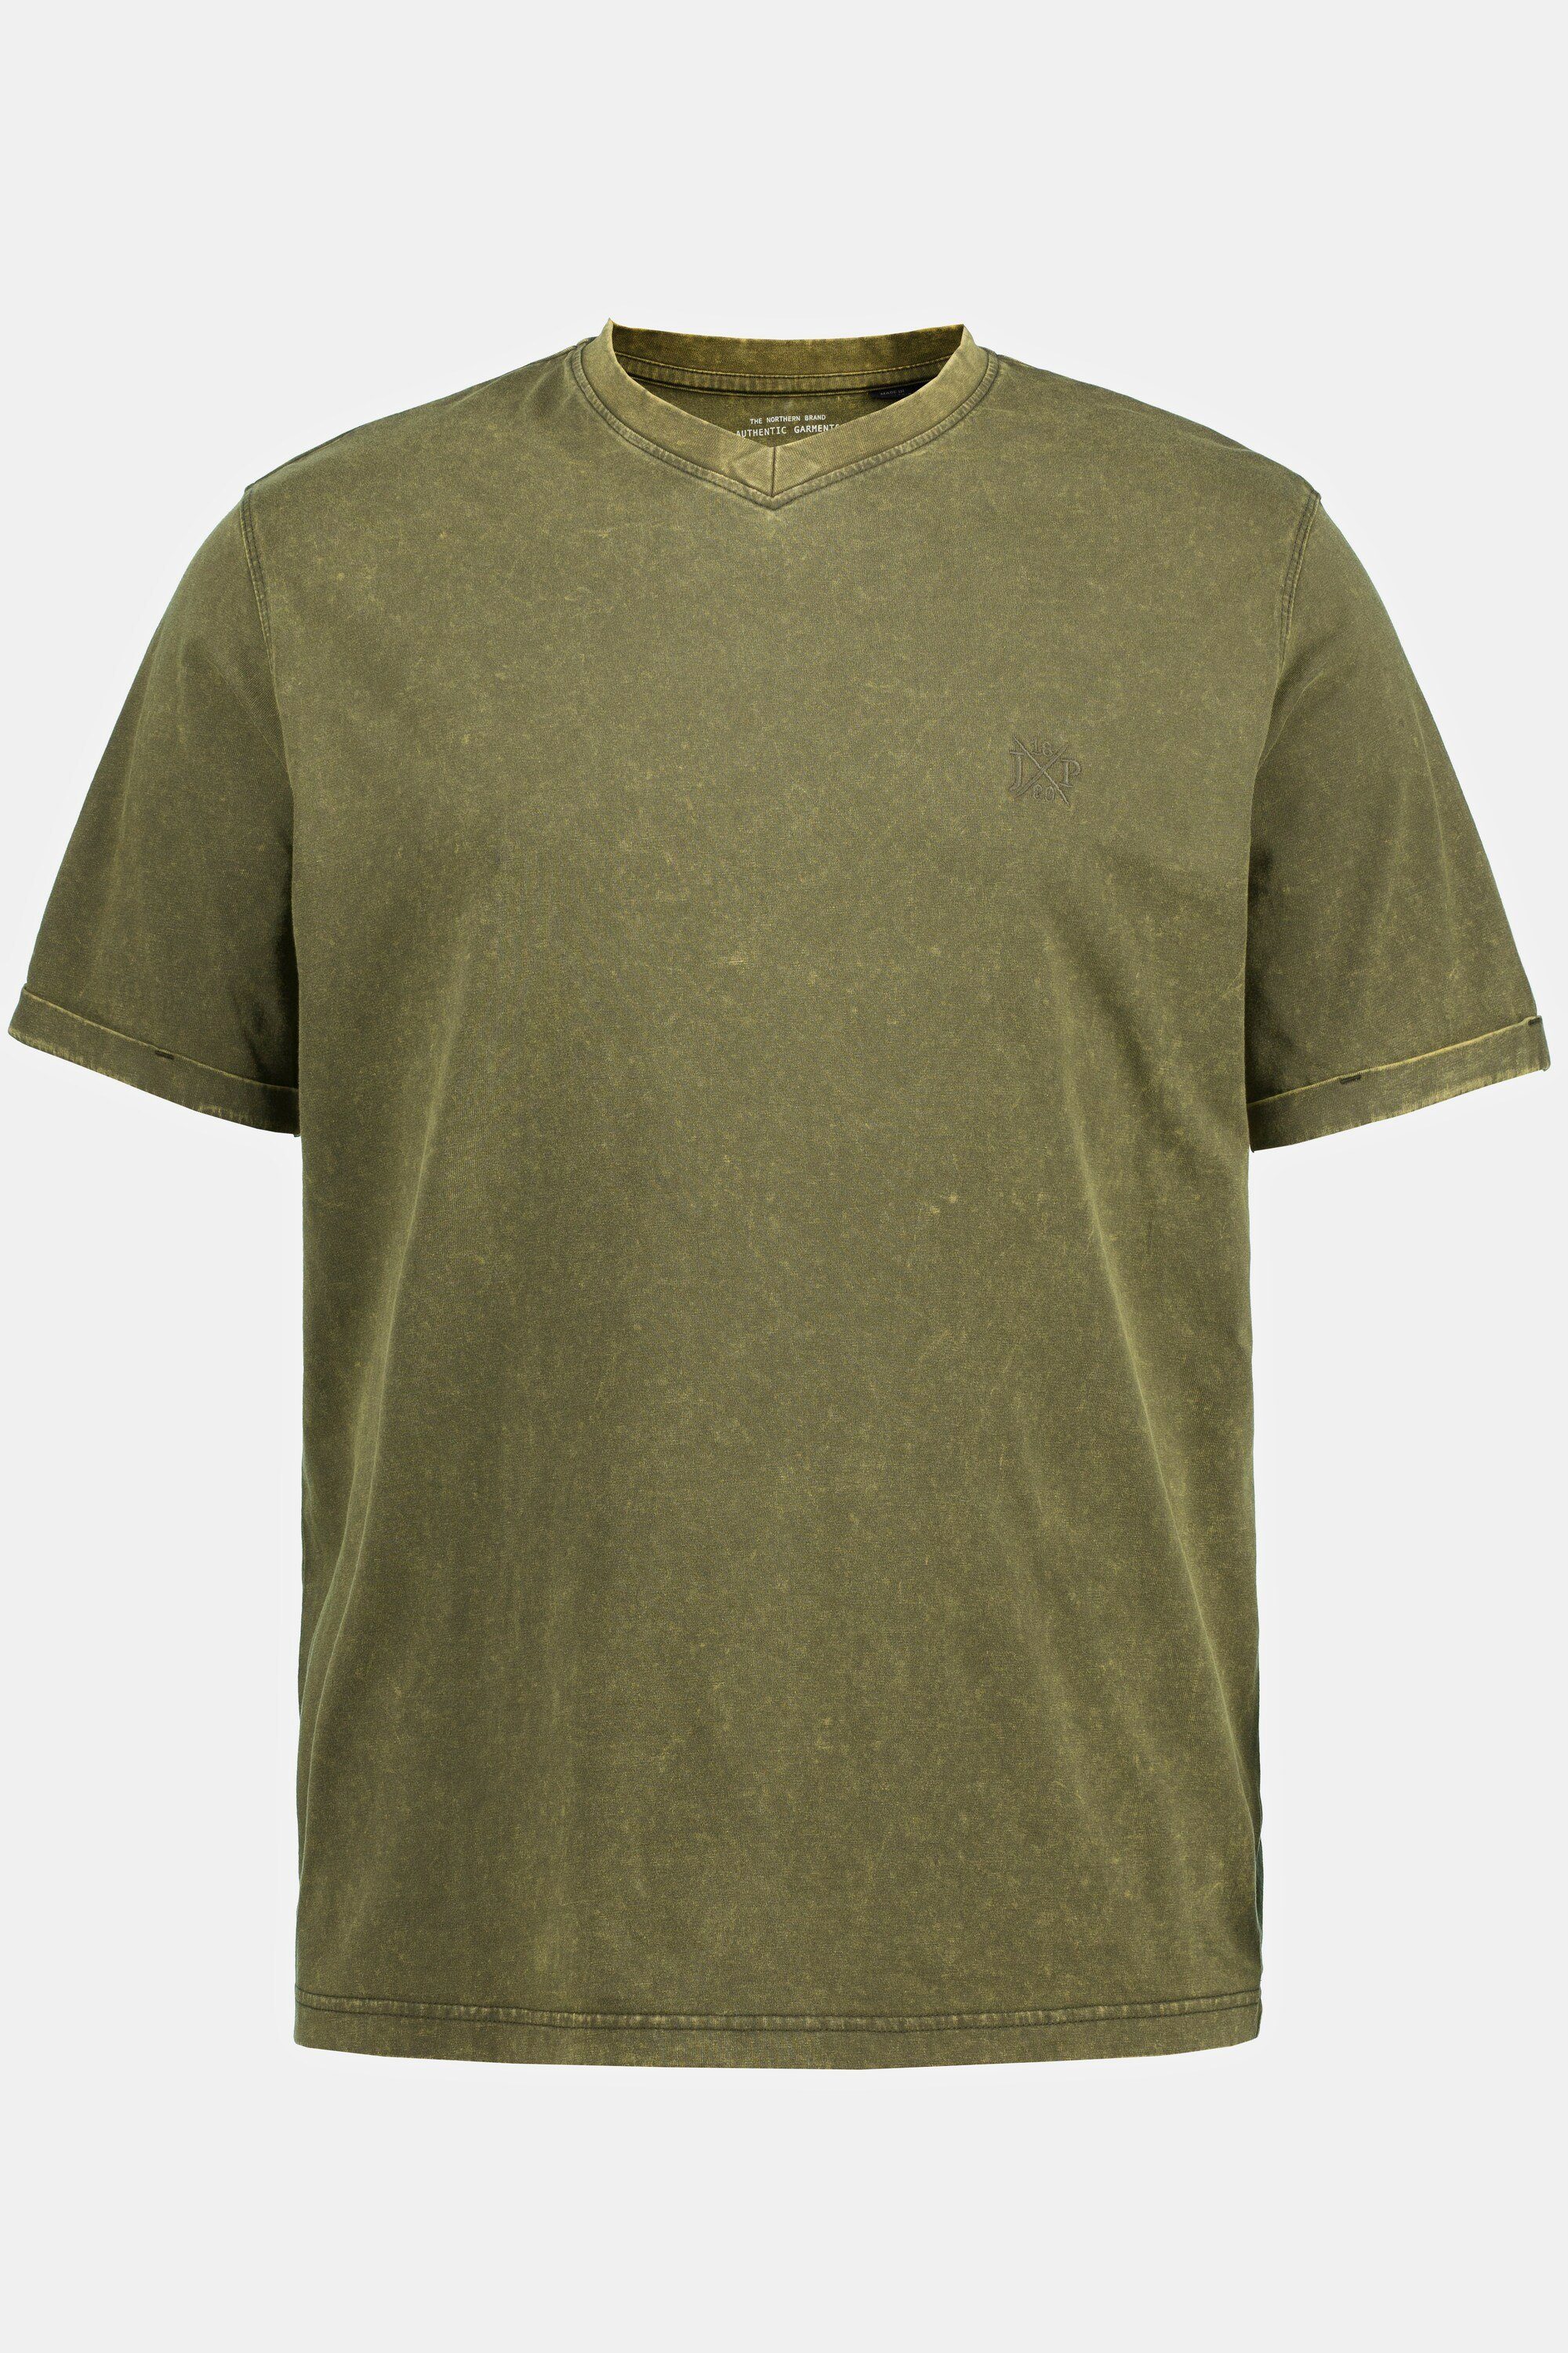 tannengrün T-Shirt JP1880 T-Shirt acid Halbarm washed V-Ausschnitt